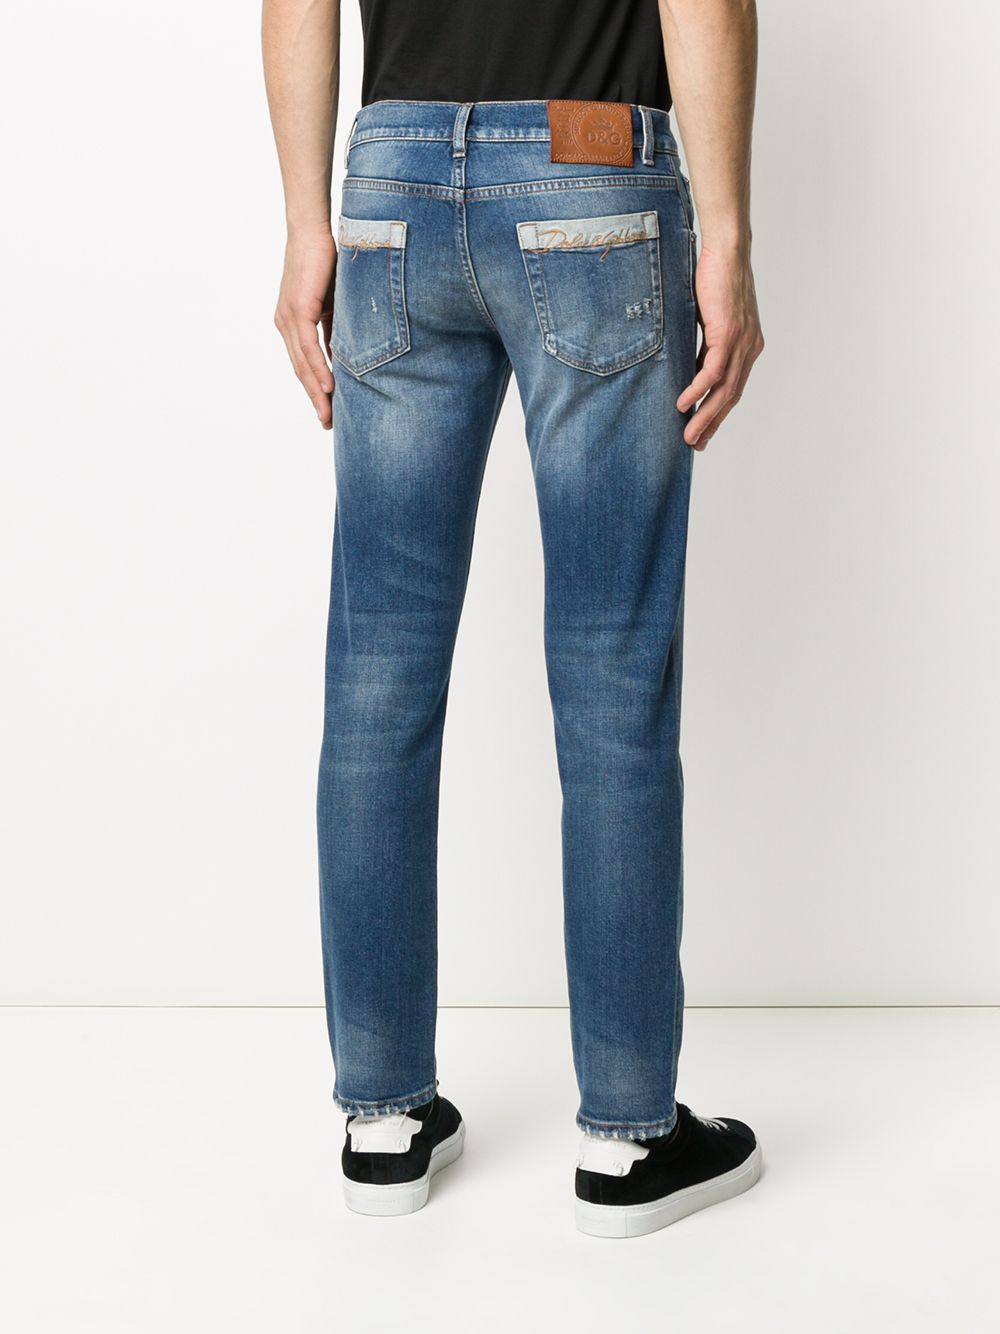 Dolce & Gabbana Distressed Skinny Jeans - Farfetch